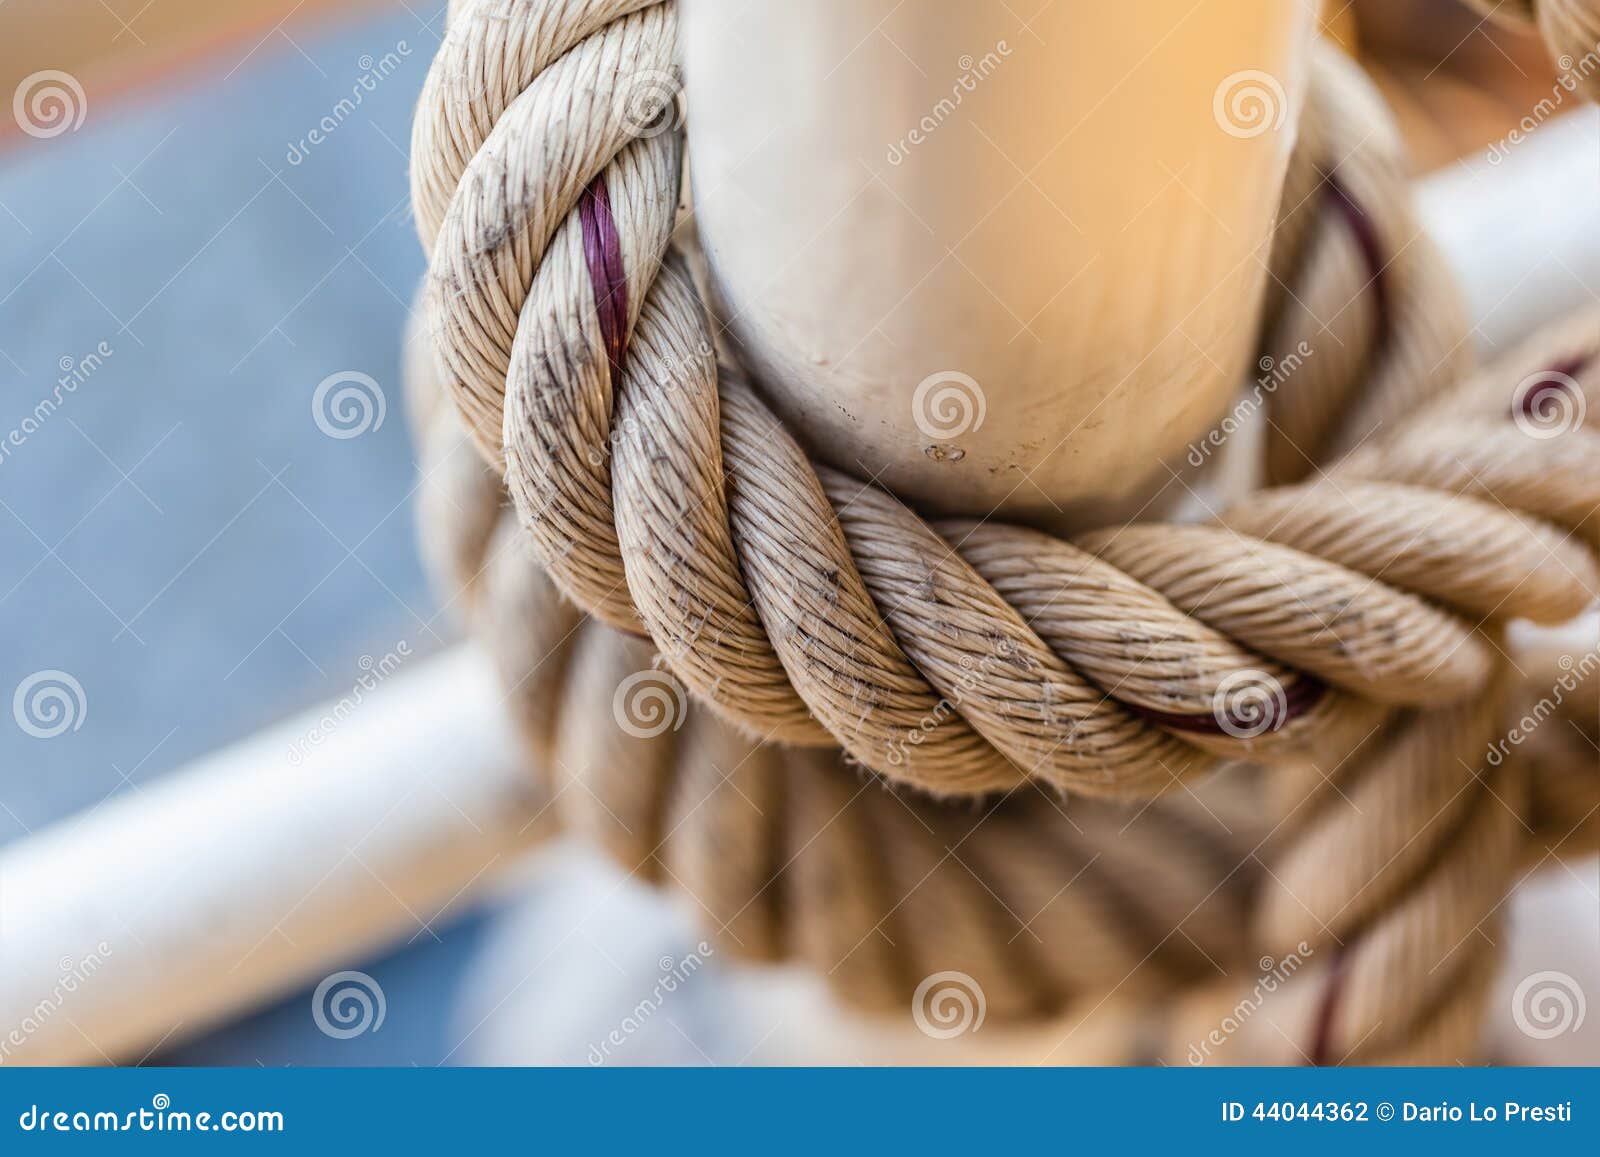 24,894 White Nautical Rope Stock Photos - Free & Royalty-Free